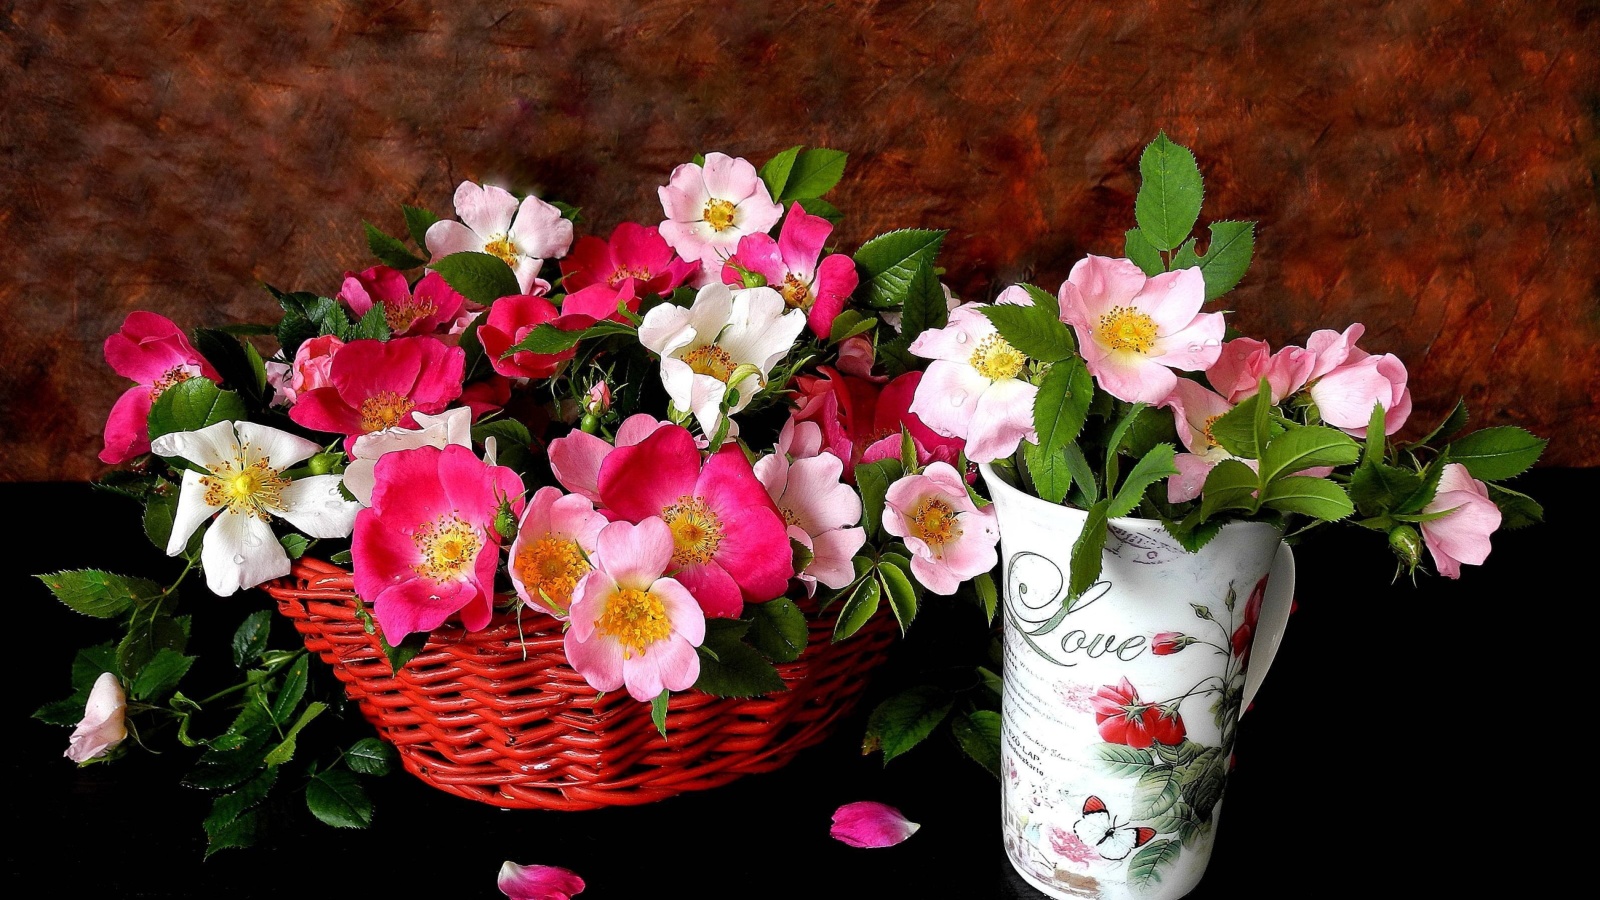 Sweetheart flowers wallpaper 1600x900